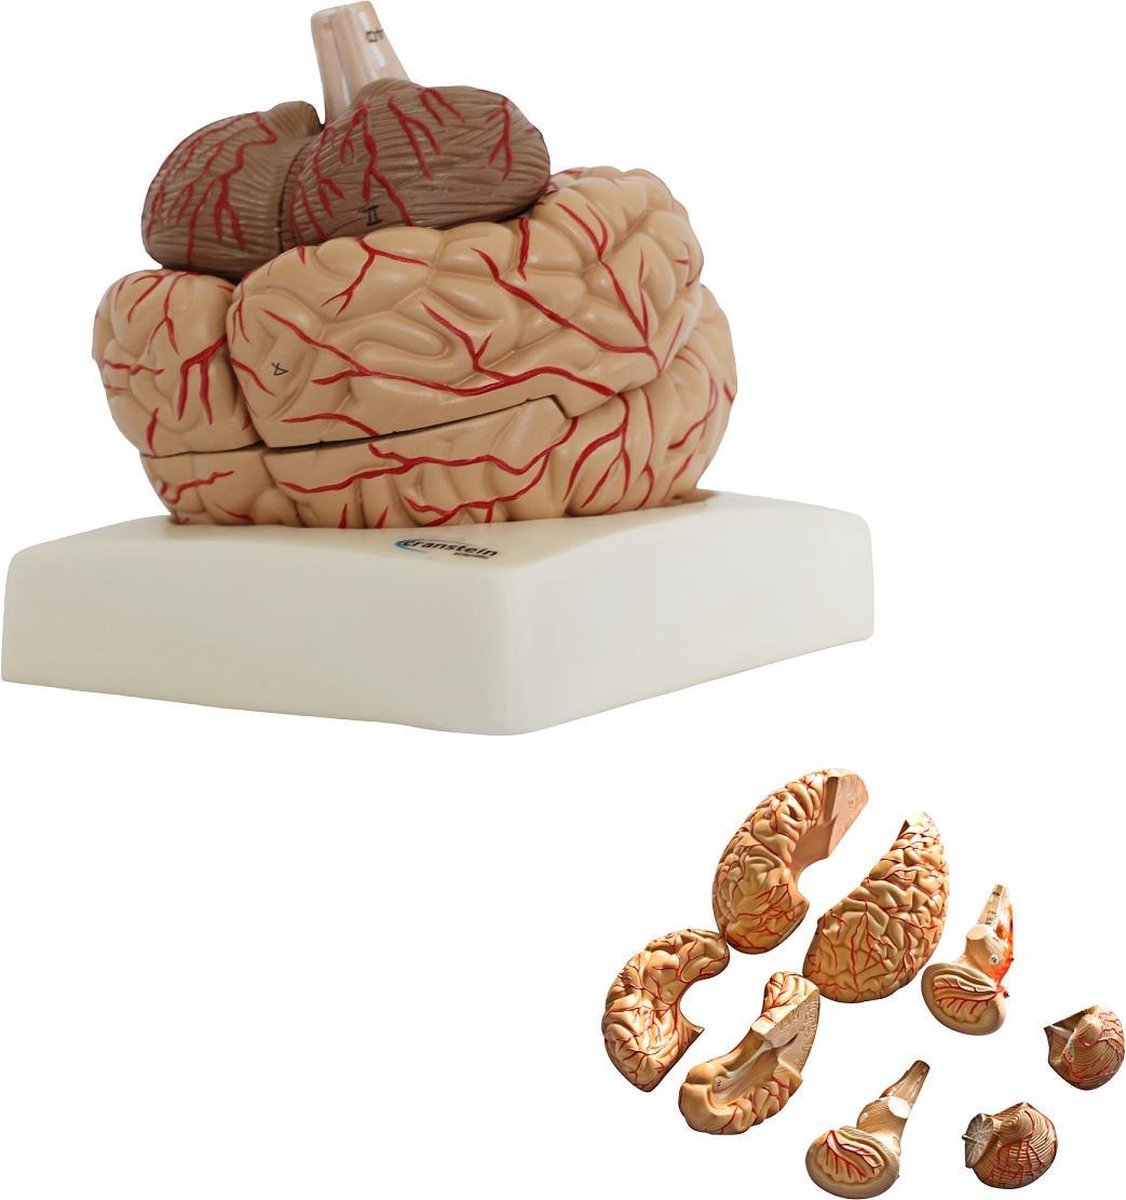 Het menselijk lichaam - anatomie model van de hersenen met bloedvaten, 8-delig